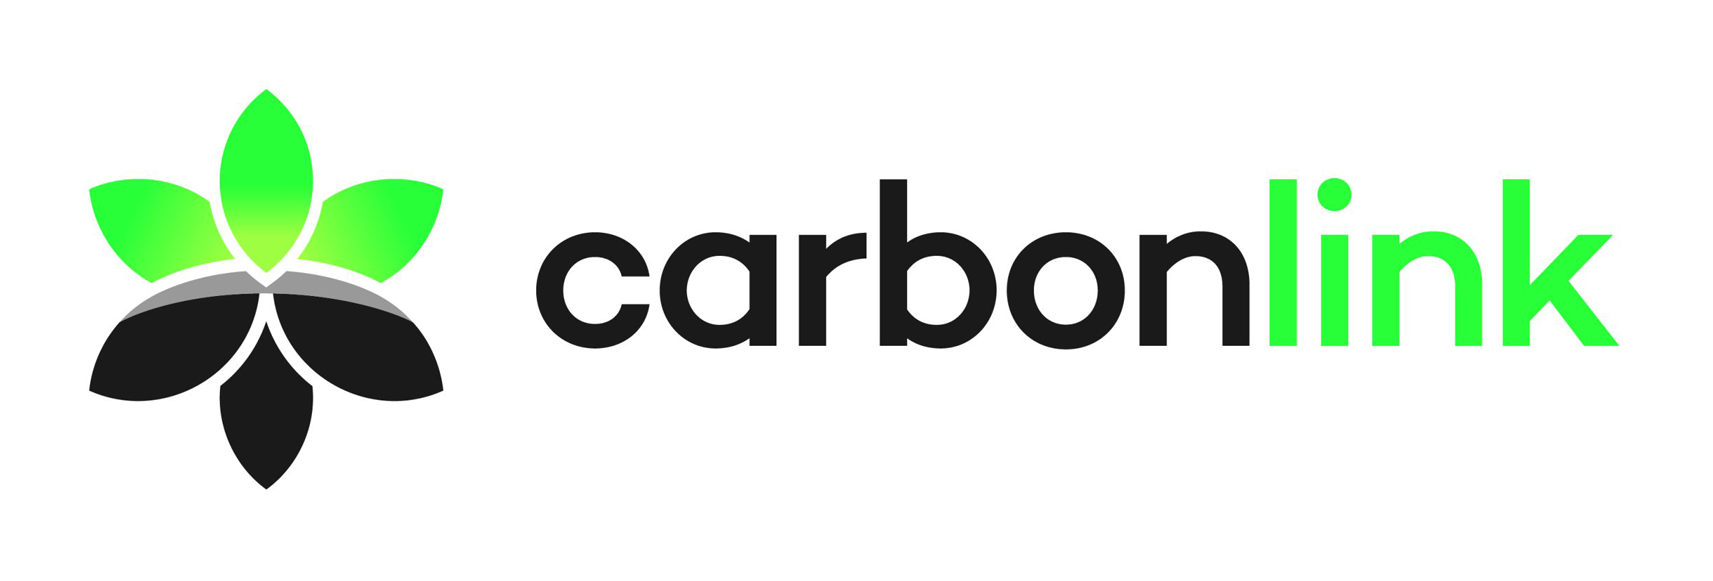 Carbonlink